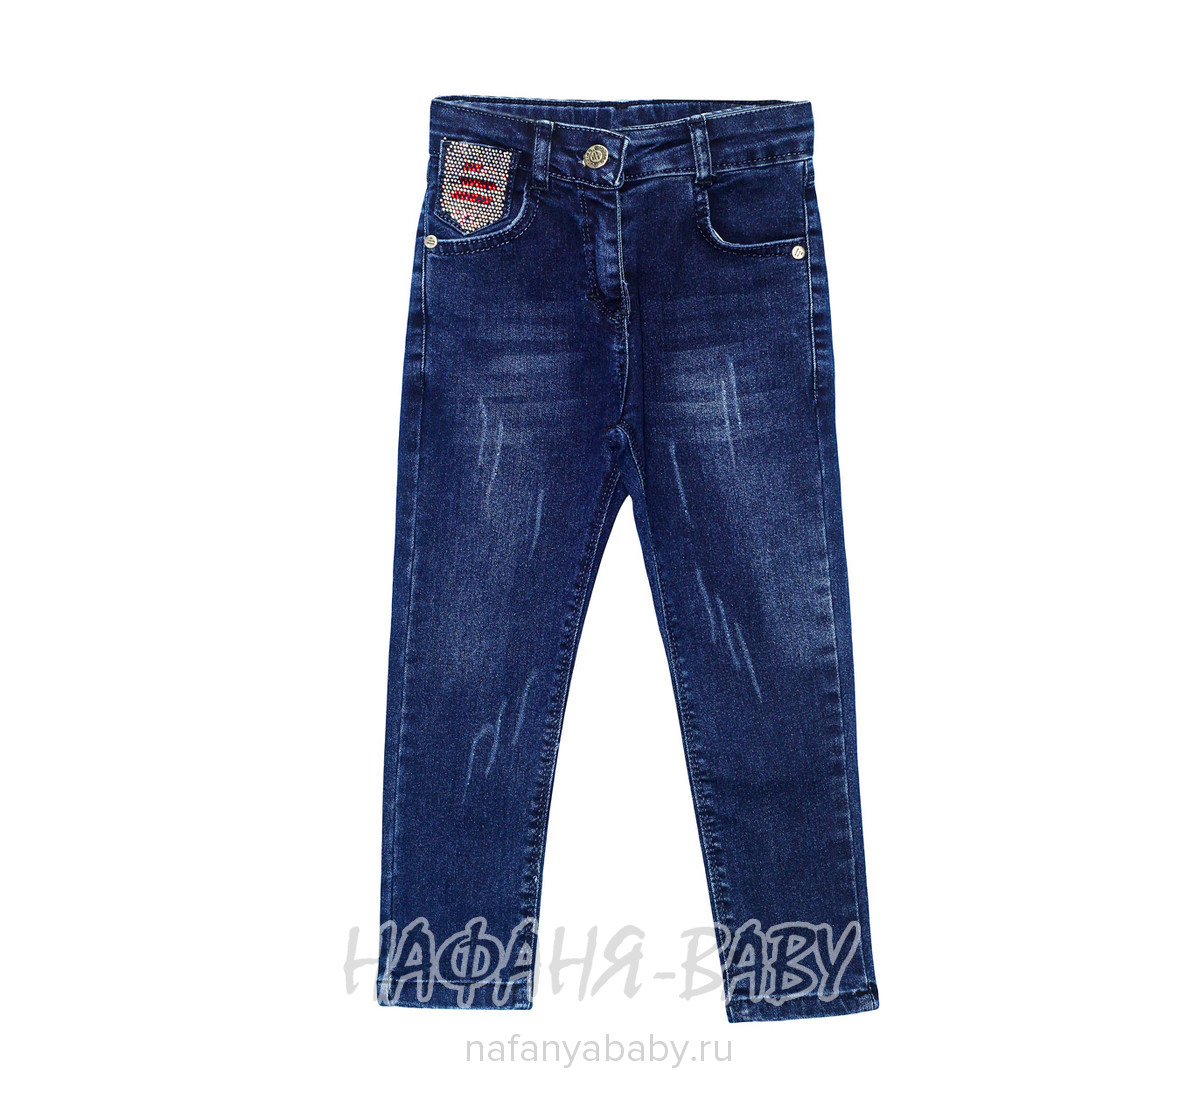 Детские джинсы для девочки Sercino арт: 59982, 5-9 лет, 1-4 года, оптом Турция